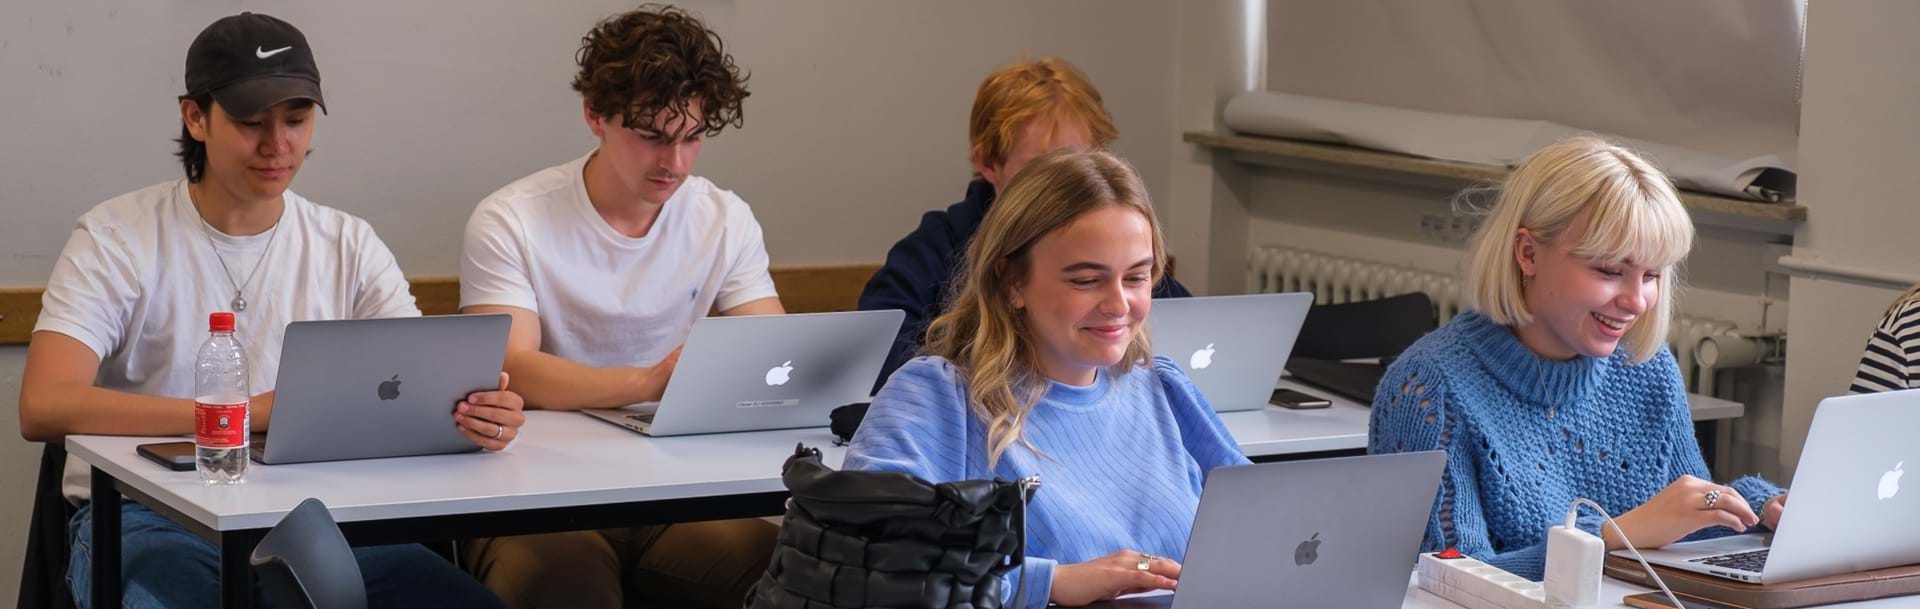 Elever arbejder på dere computere i klasselokalet